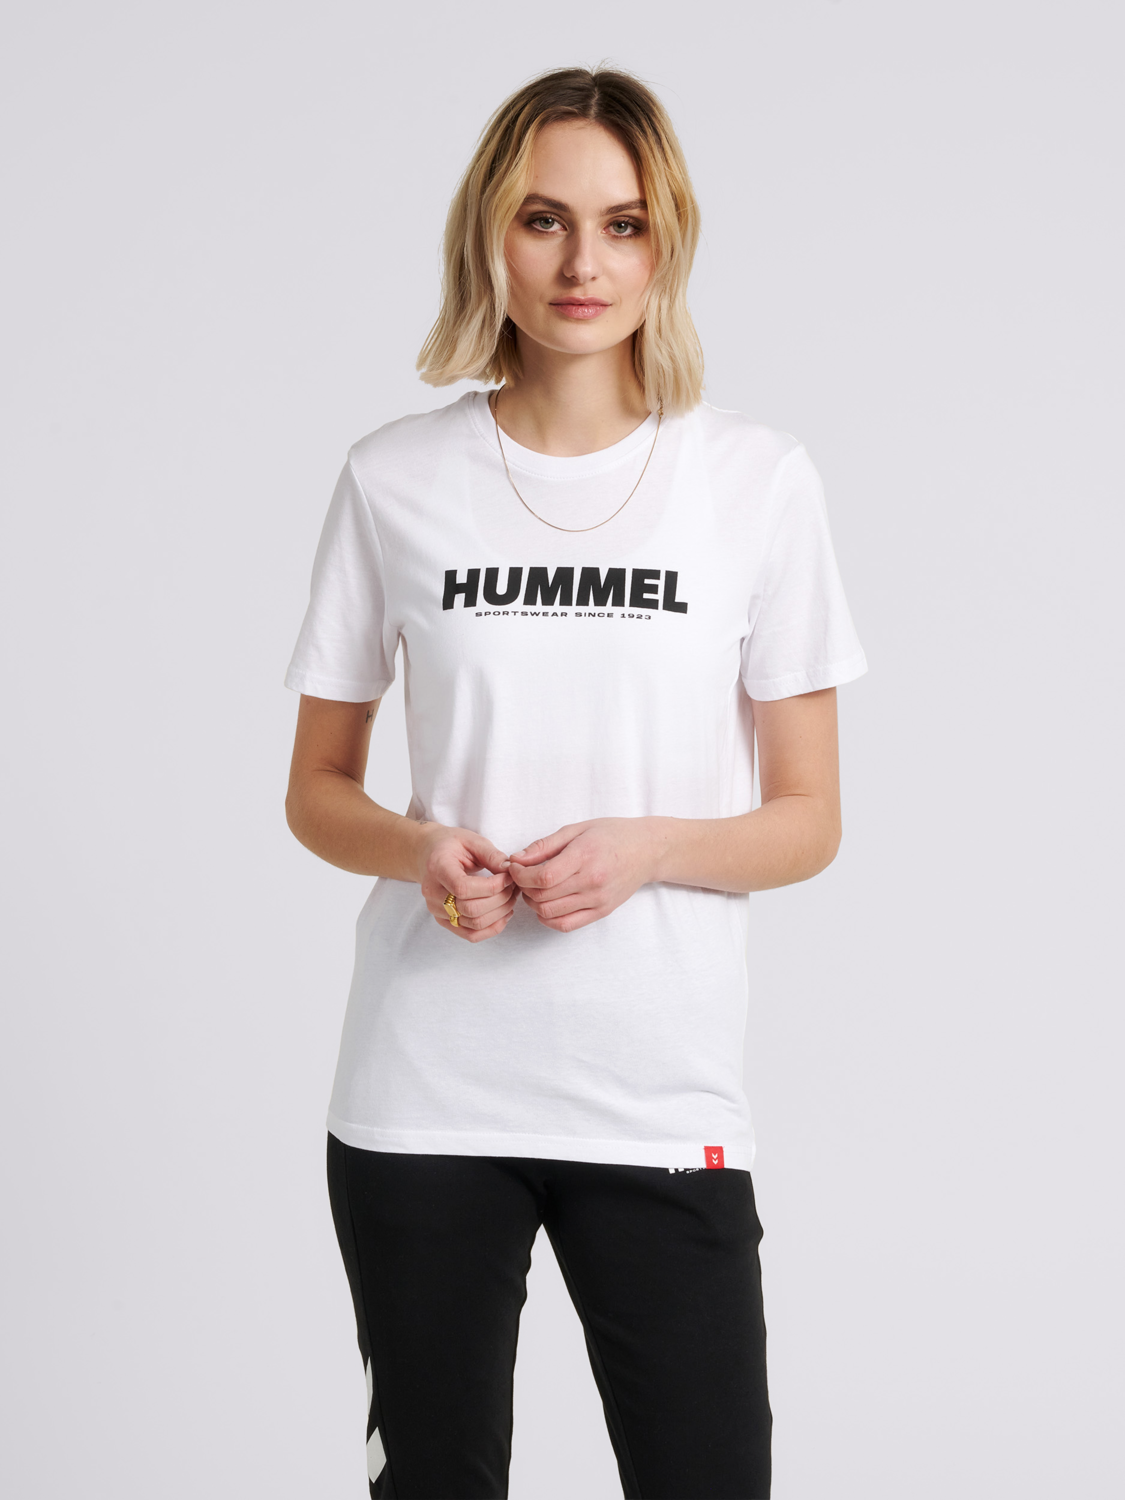 hummel t shirt